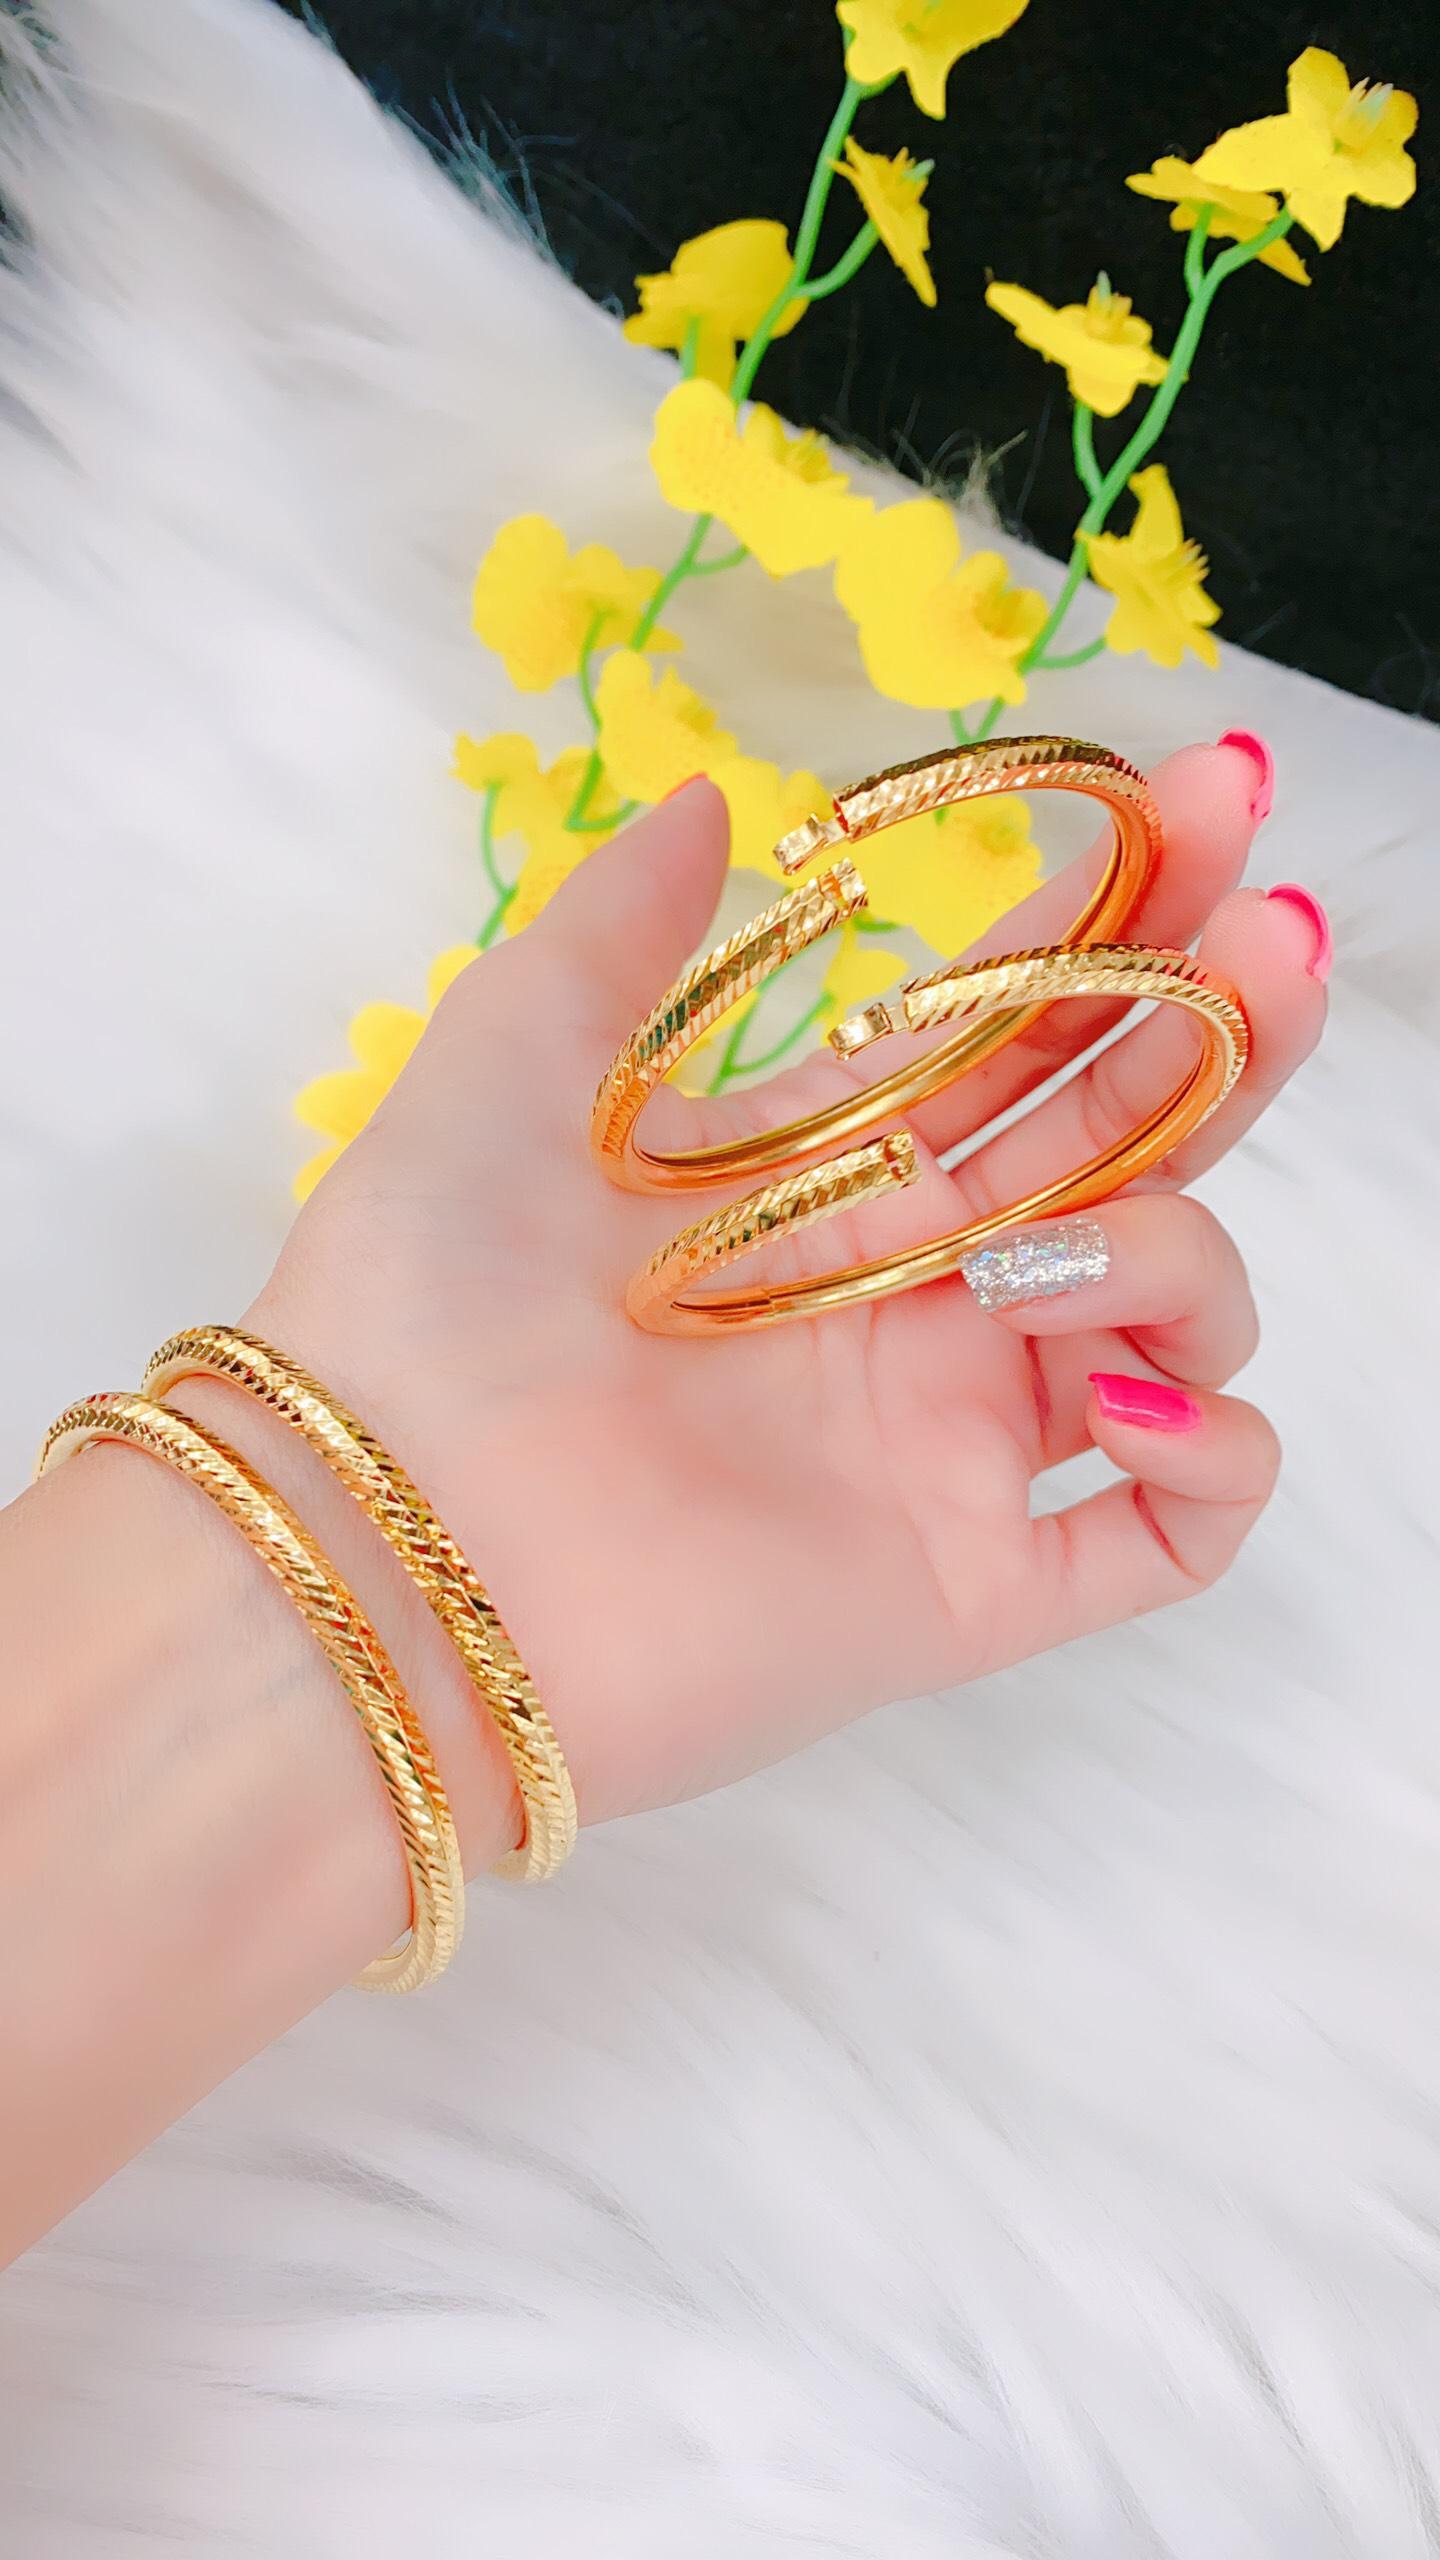 Vòng đeo tay nữ khóa vàng 18k Hàn Quốc: Chiếc vòng đeo tay này là sự kết hợp hoàn hảo giữa phong cách và chất liệu cao cấp. Mang trong mình vẻ đẹp và sự sang trọng của vàng 18k, chiếc vòng tay này sẽ làm bật lên phong cách thời thượng của bạn. Hãy sắm ngay chiếc vòng đeo tay nữ khóa vàng 18k Hàn Quốc để tỏa sáng trong mọi bữa tiệc.